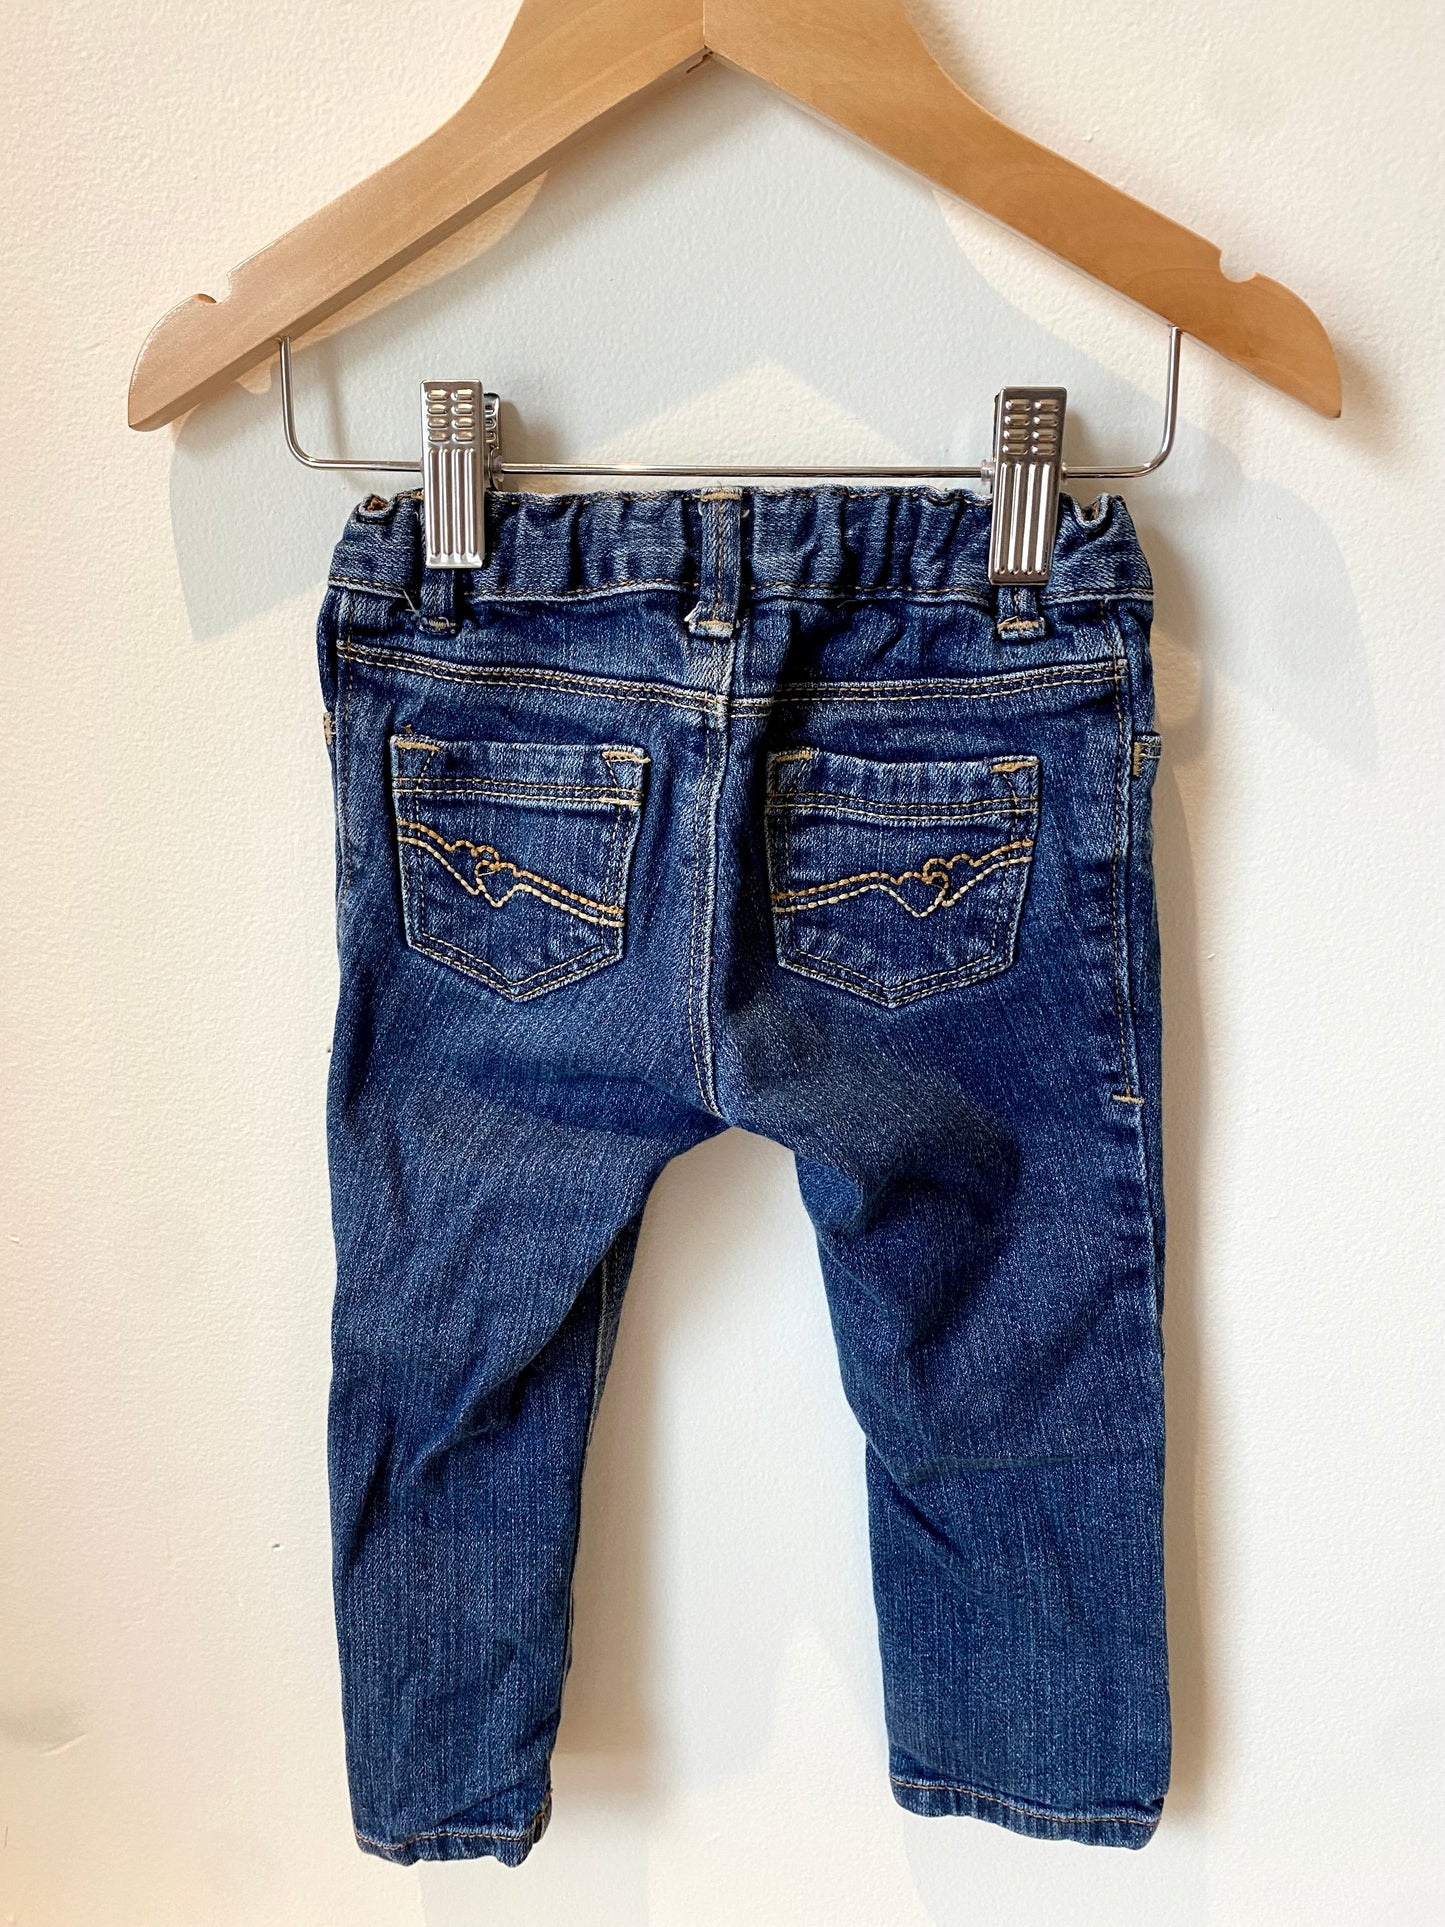 Standard Blue Jeans / 3T